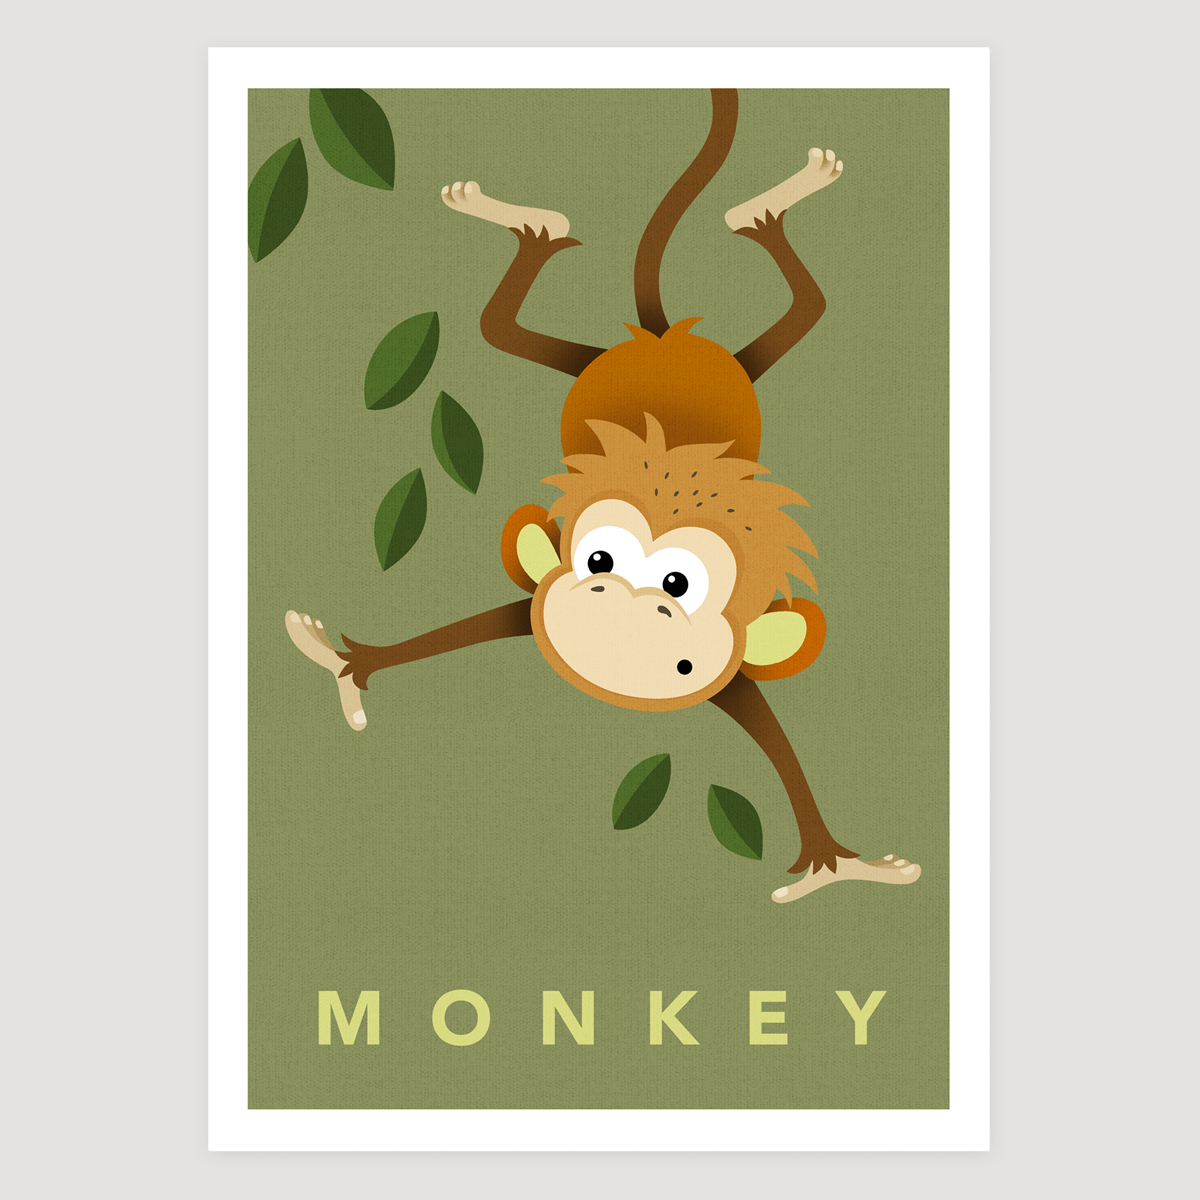 Monkey khaki small text